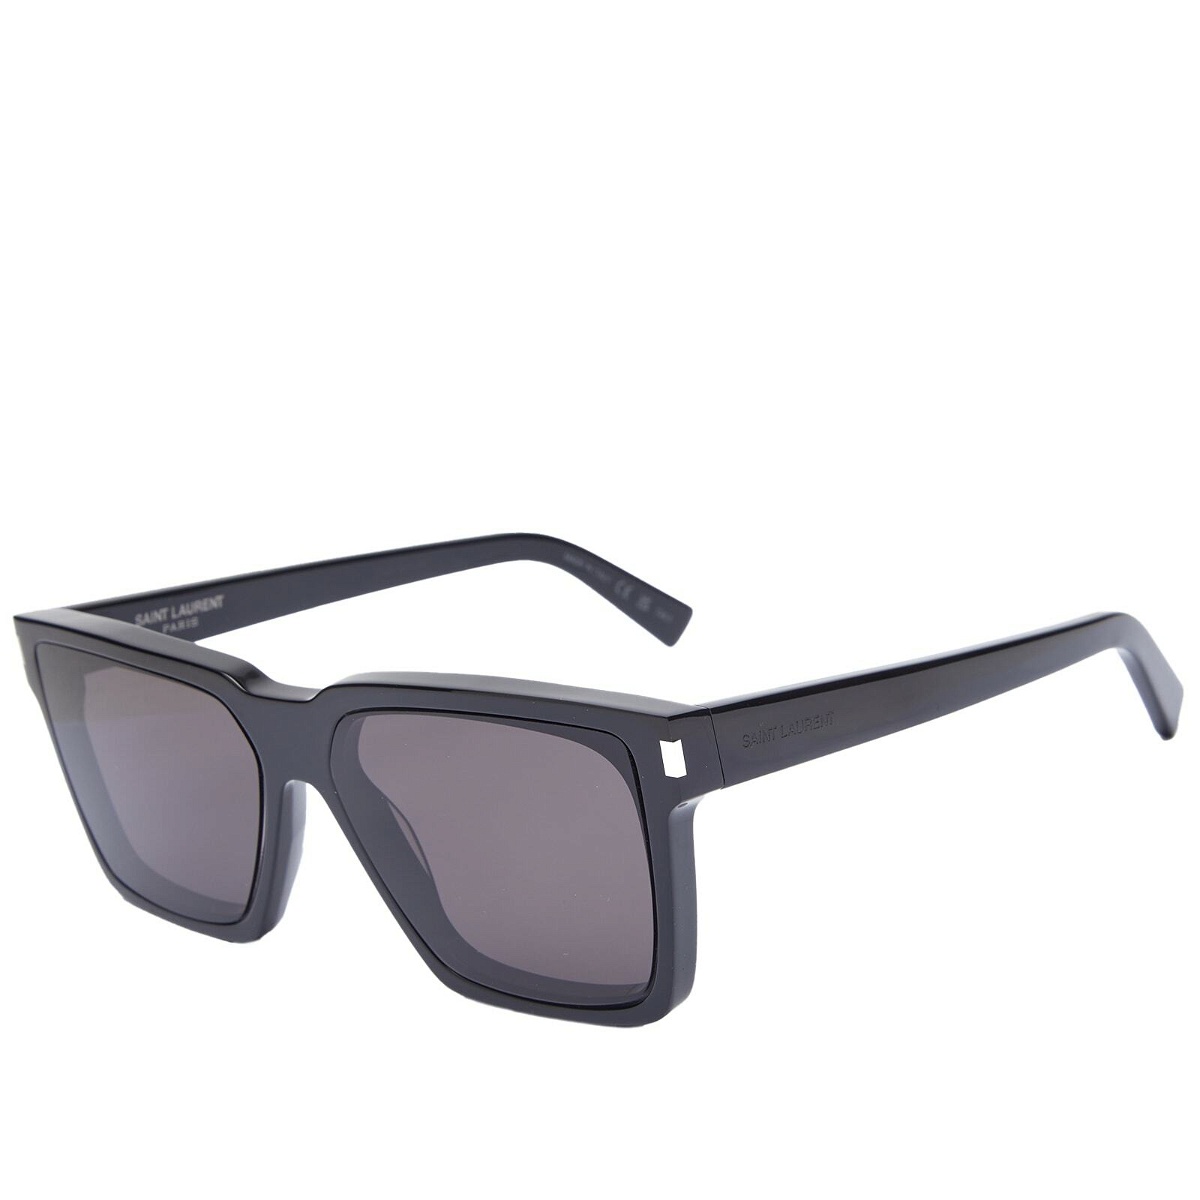 Paloma Square Sunglasses in Black - Saint Laurent